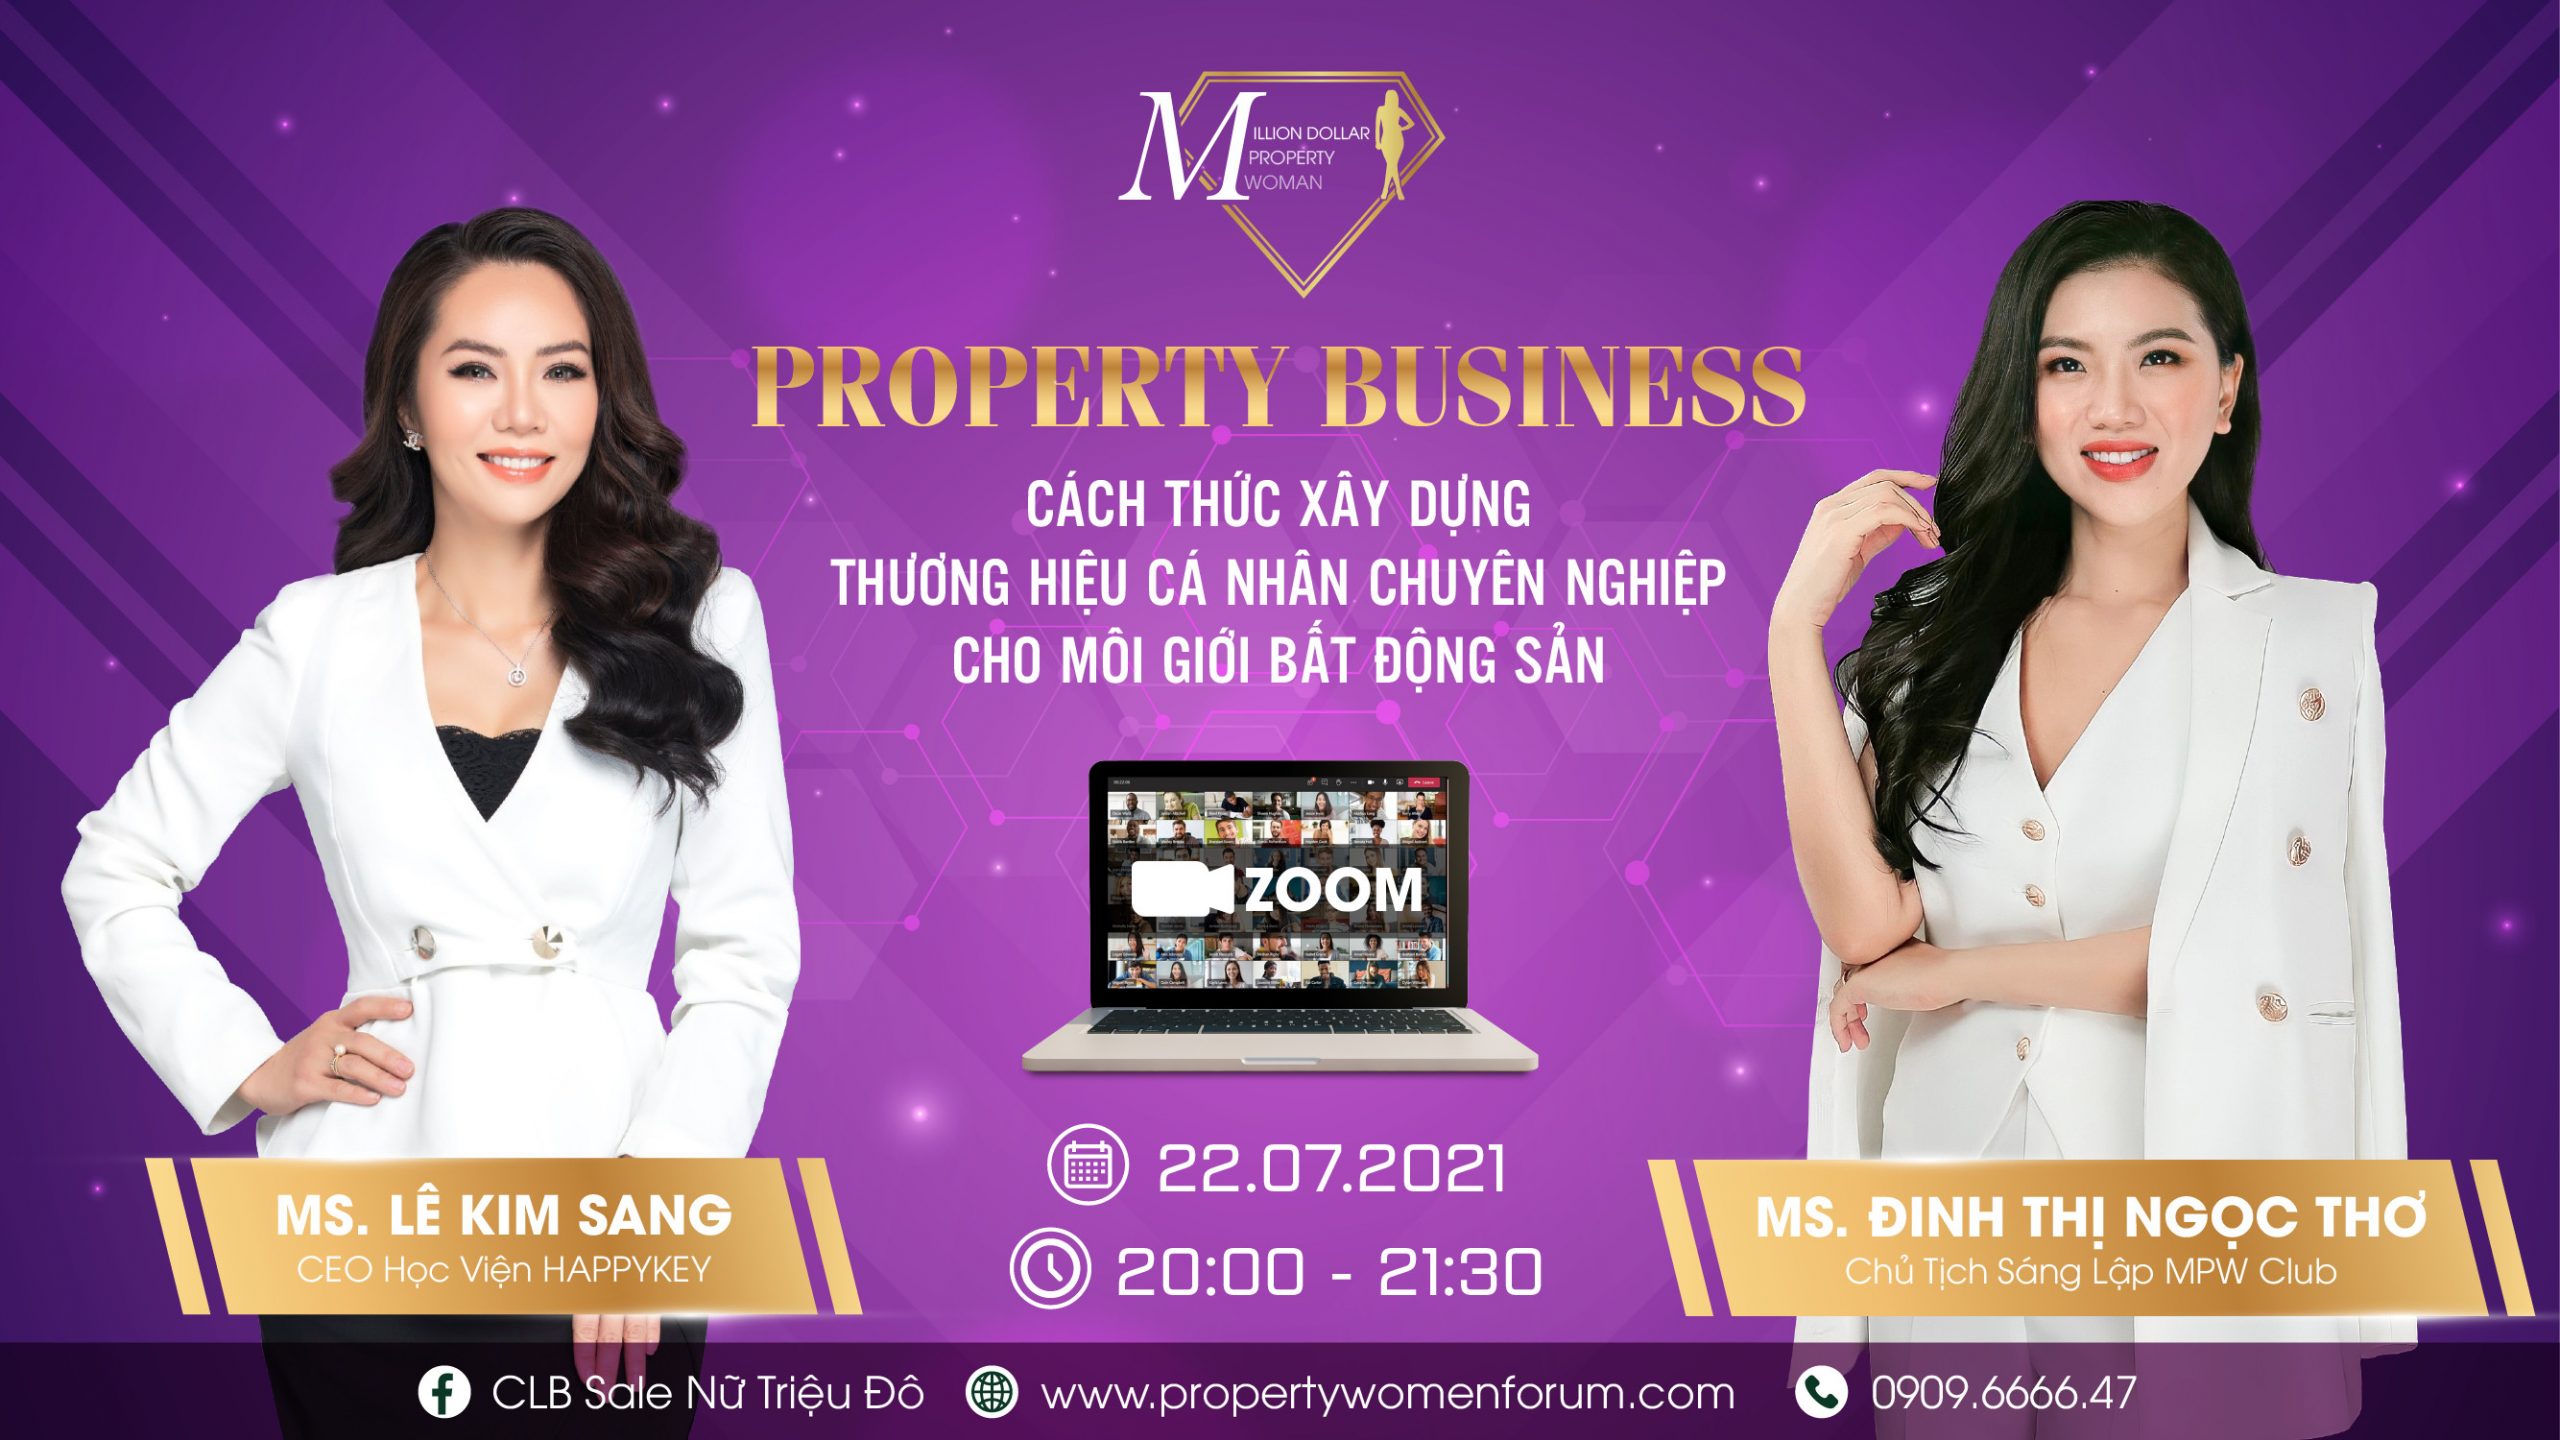 property-business-cach-thuc-xay-dung-thuong-hieu-ca-nhan-chuyen-nghiep-cho-moi-gioi-bat-dong-san